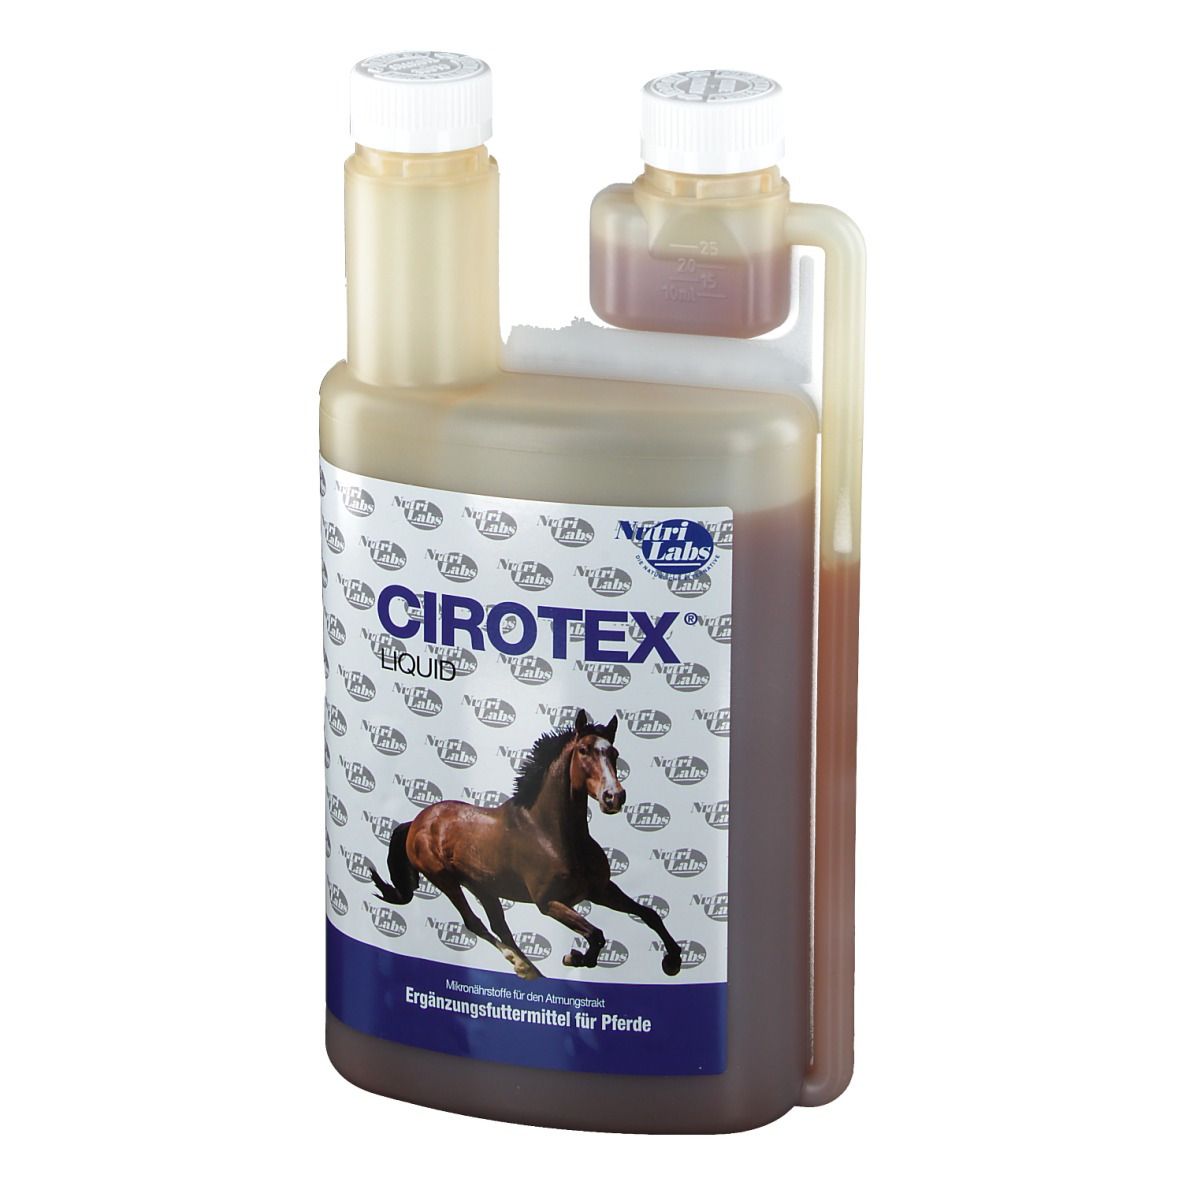 Nutrilabs Cirotex liquid